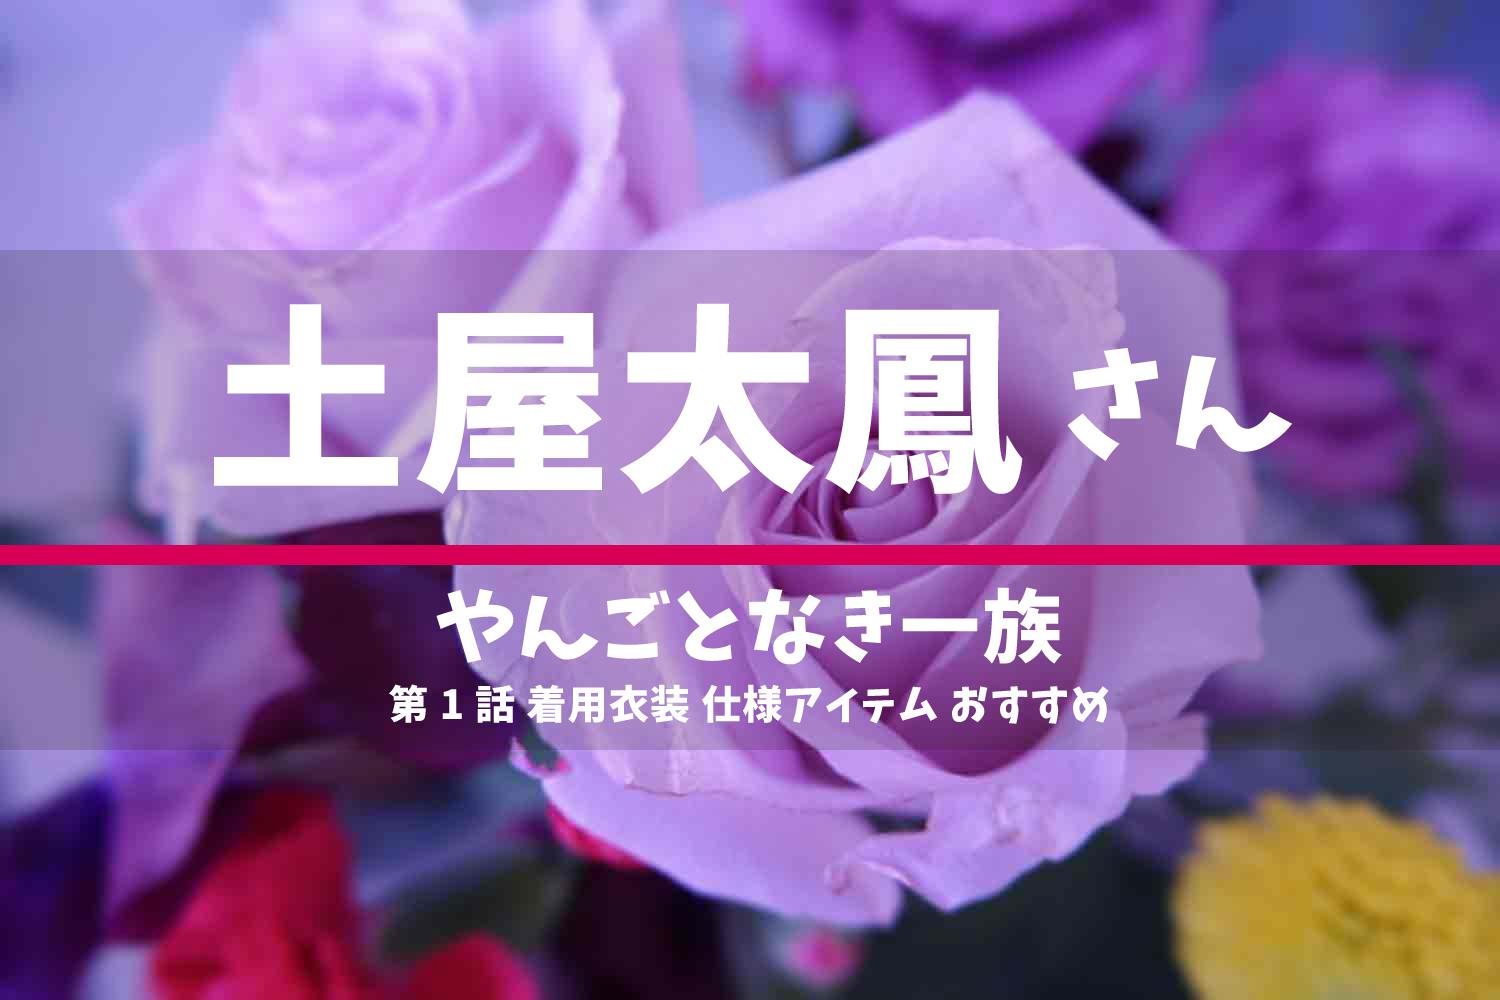 やんごとなき一族 土屋太鳳さん ドラマ 衣装 2022年4月21日放送